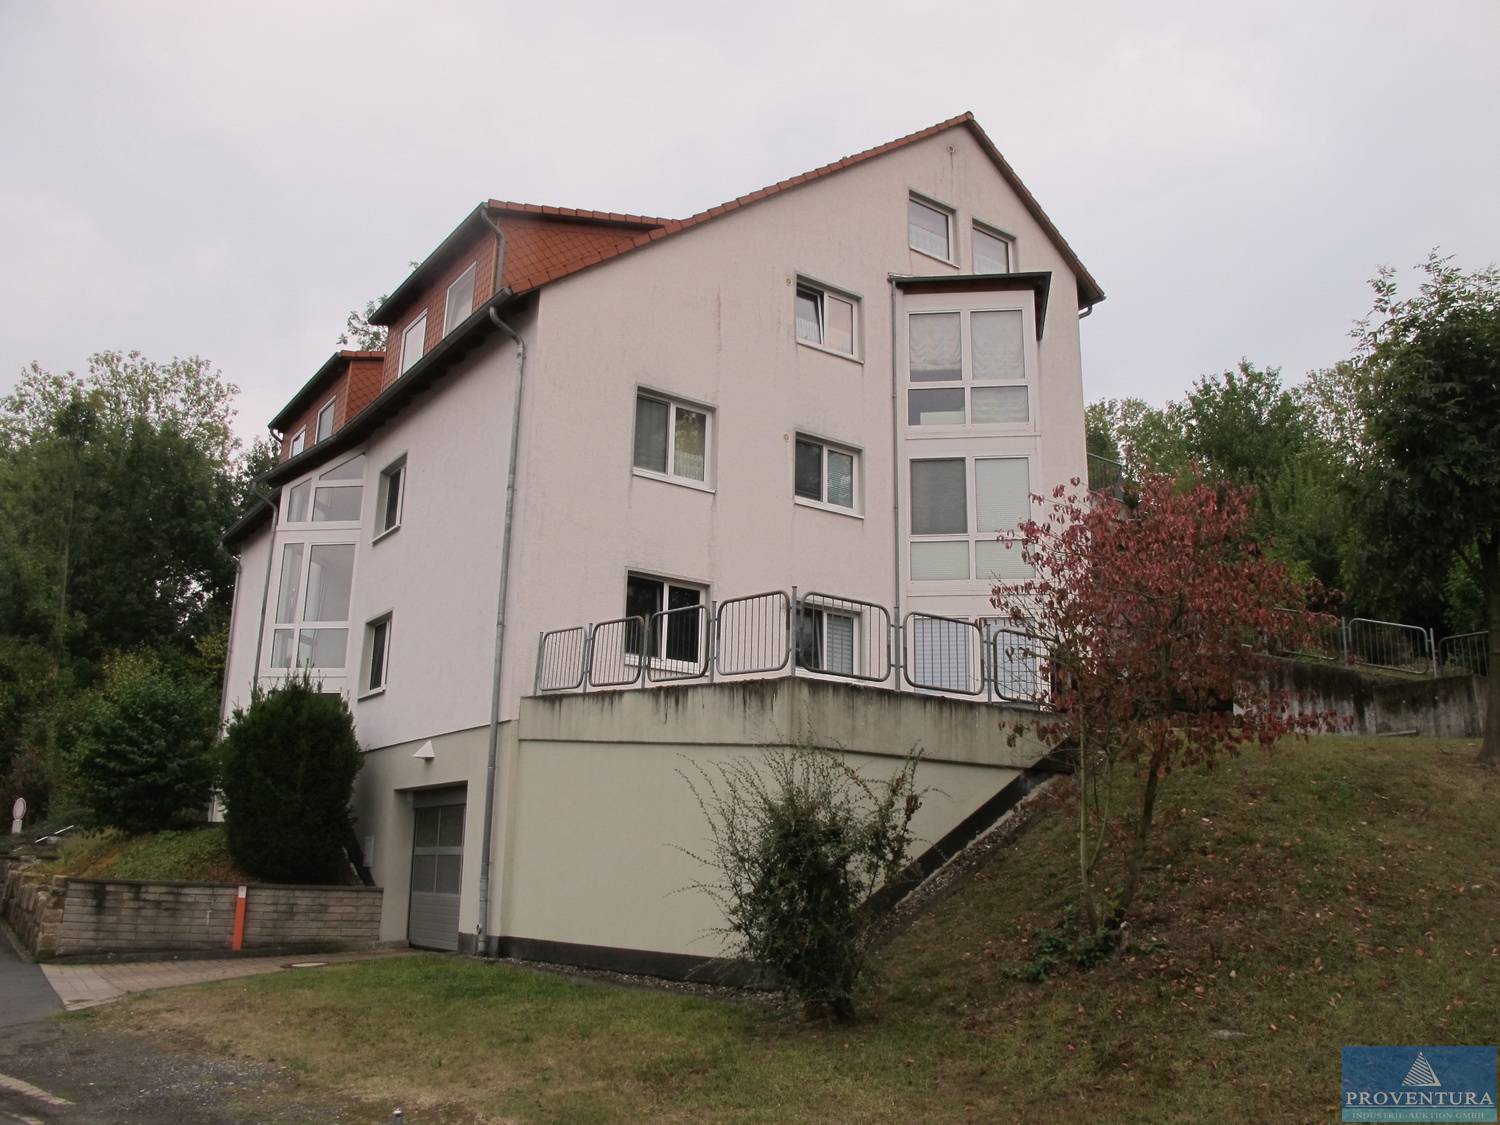 Eigentumswohnung 2 Zimmer-Küche-Bad-Terrasse, 37124 Rosdorf OT Settmarshausen